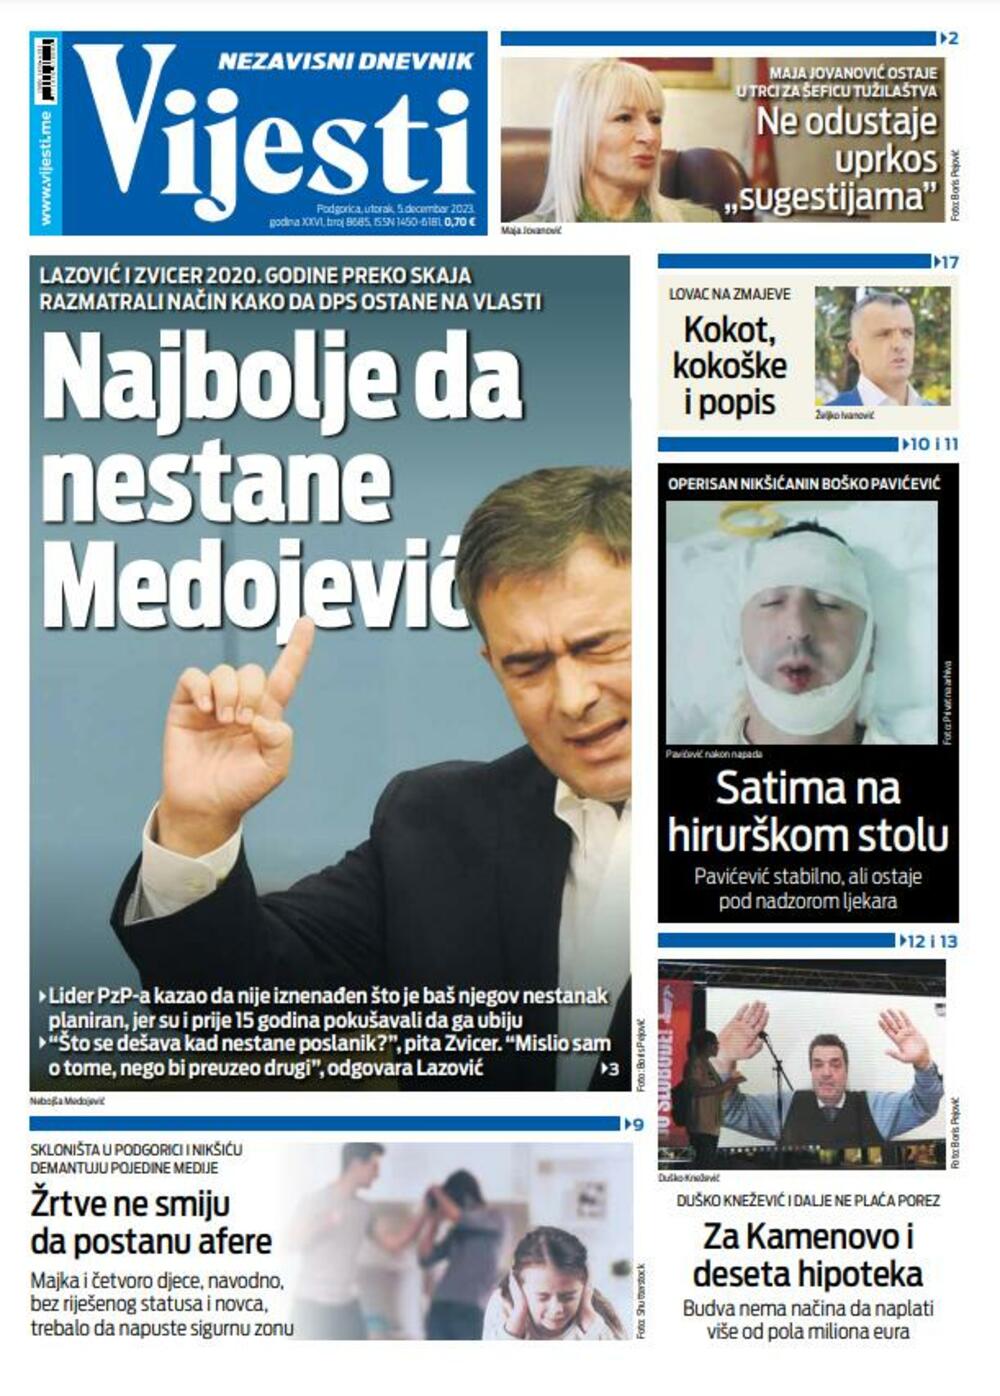 Naslovna strana "Vijesti" za 5. decembar 2023., Foto: Vijesti